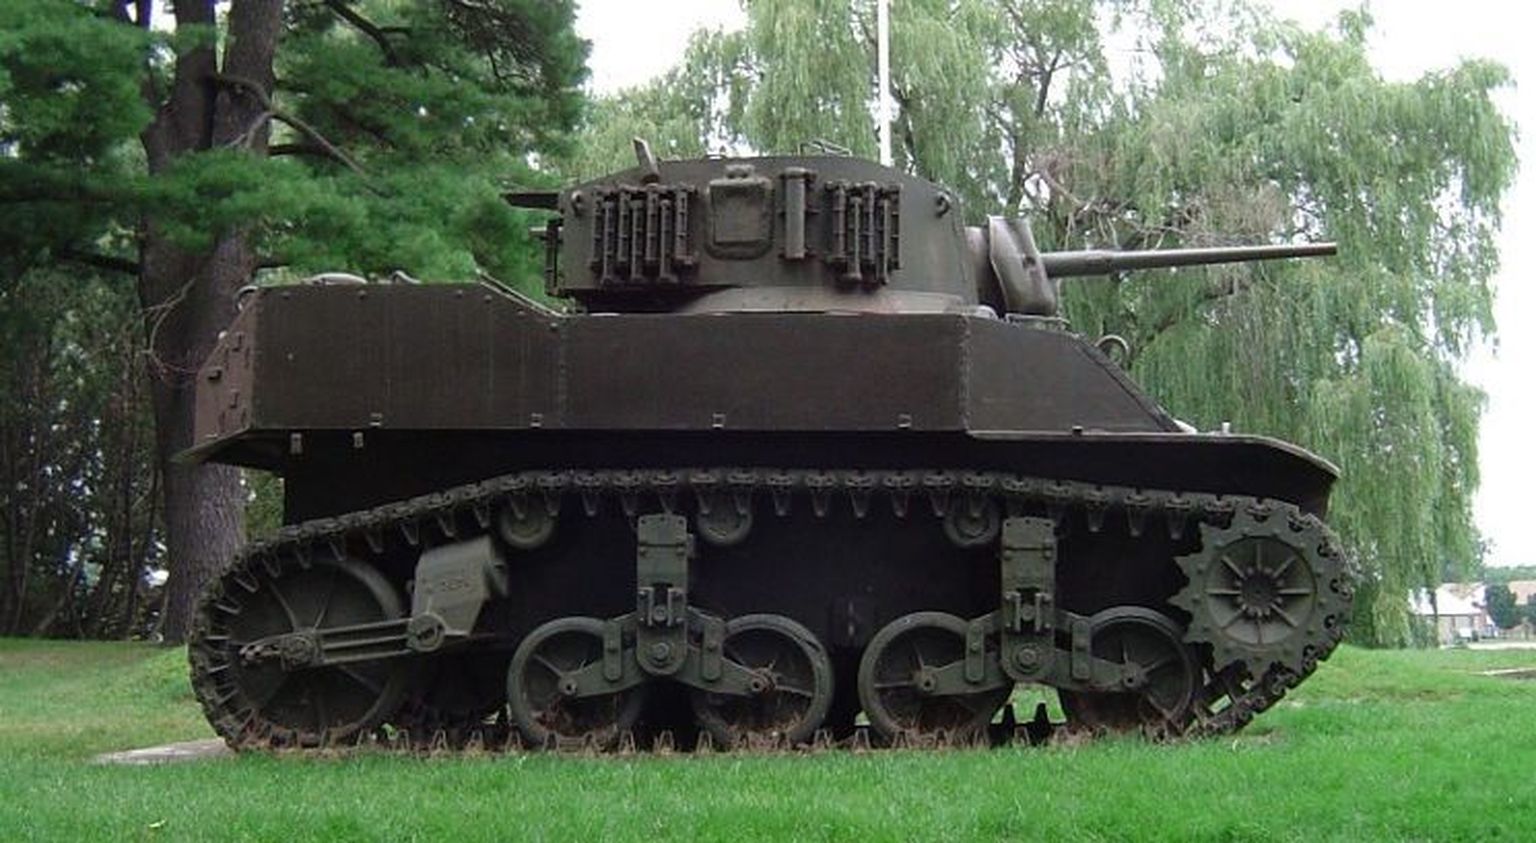 M5 Stuart tank